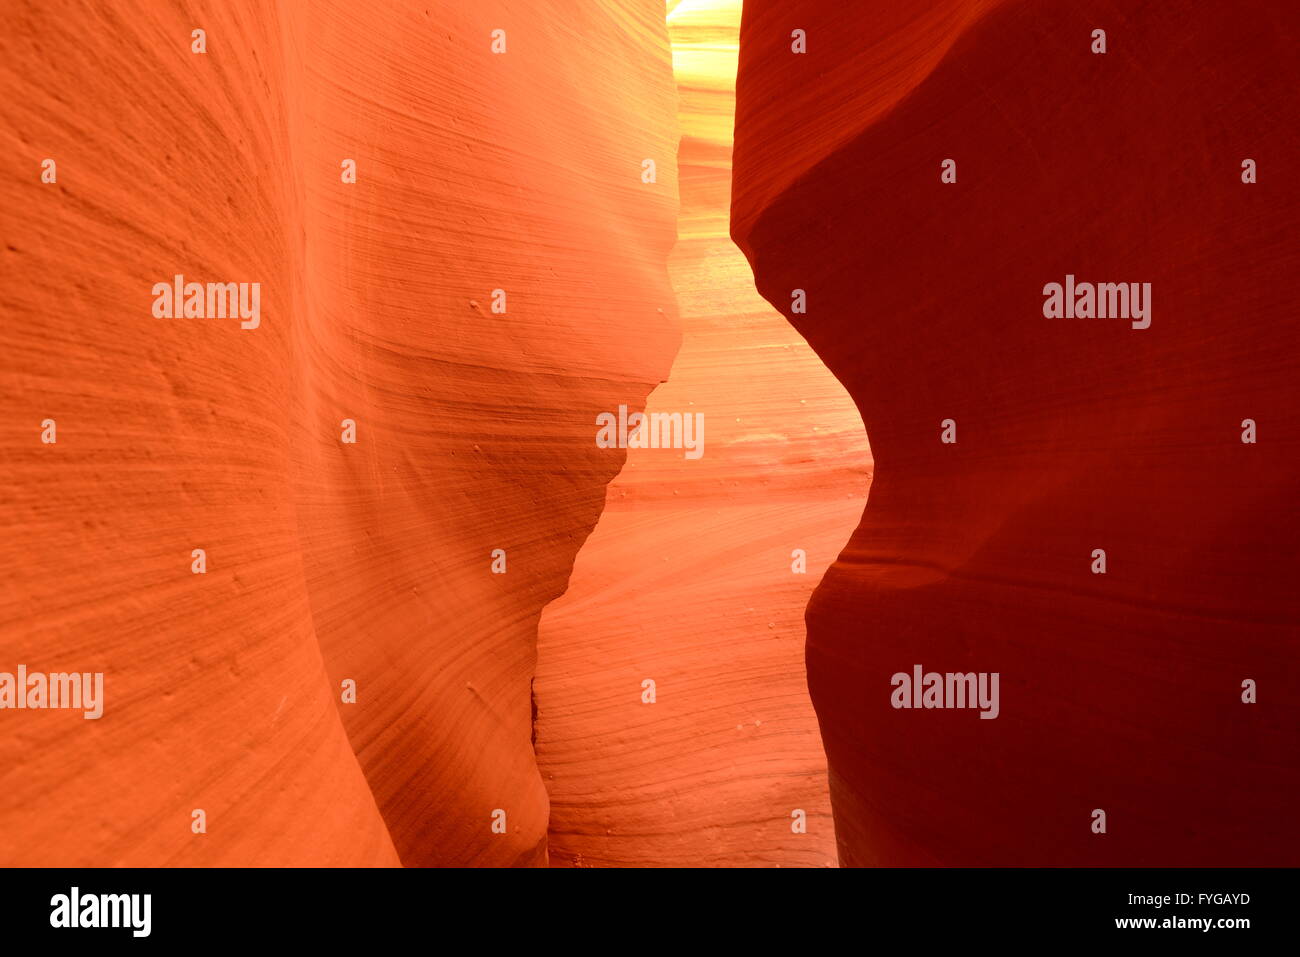 Rosso - rocce rosse rocce di arenaria in uno slot canyon Foto Stock